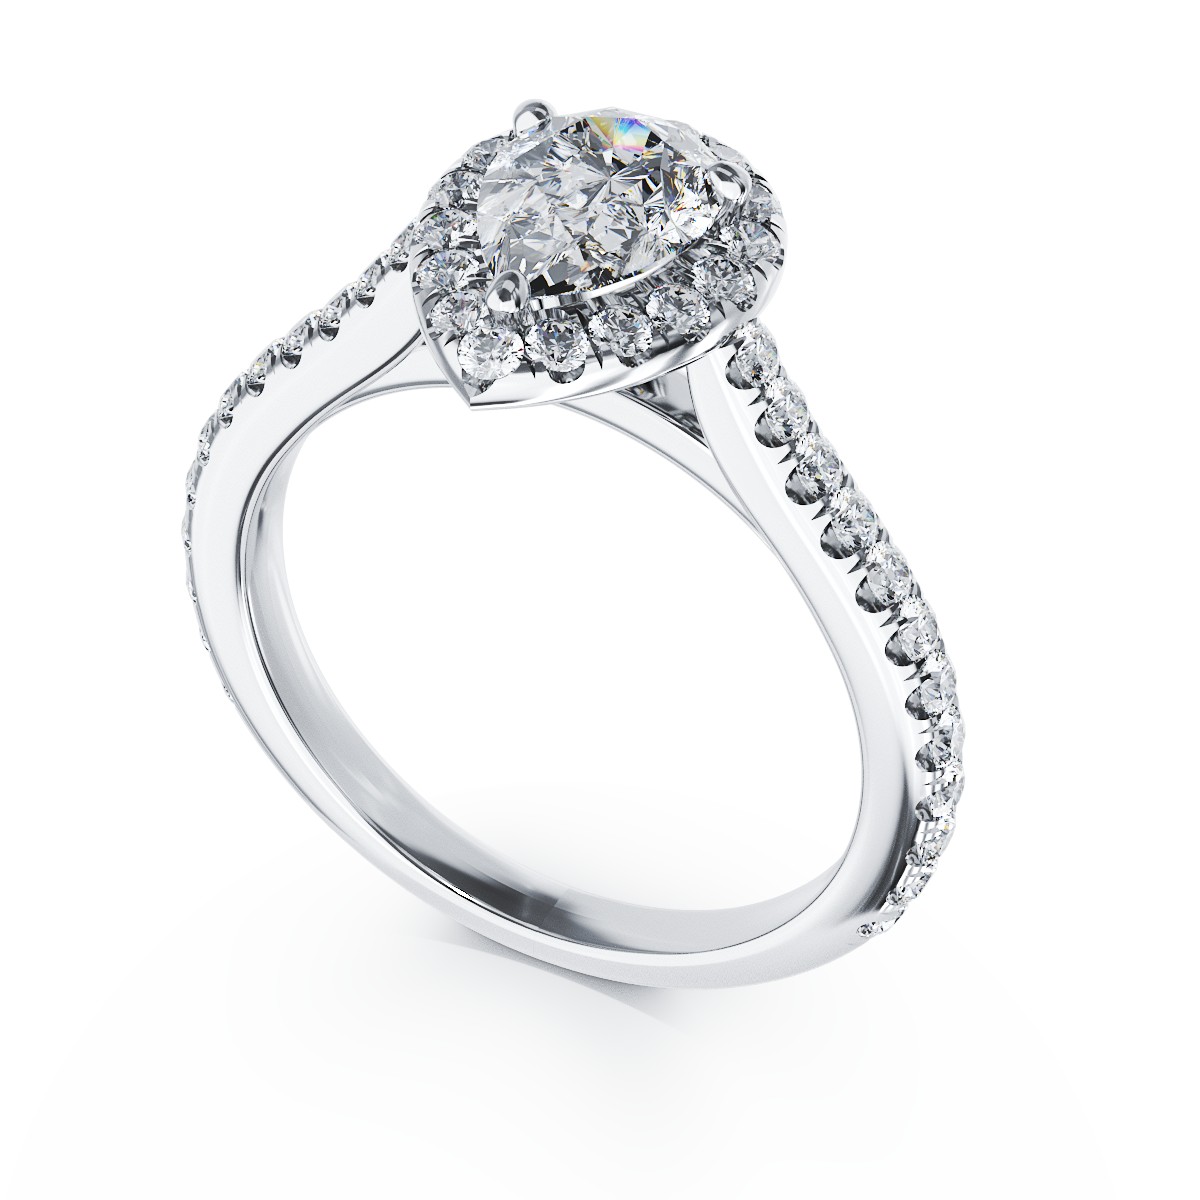 18 karátos fehérarany eljegyzési gyűrű 0.8 karátos gyémánttal és 0.48 karátos gyémántokkal